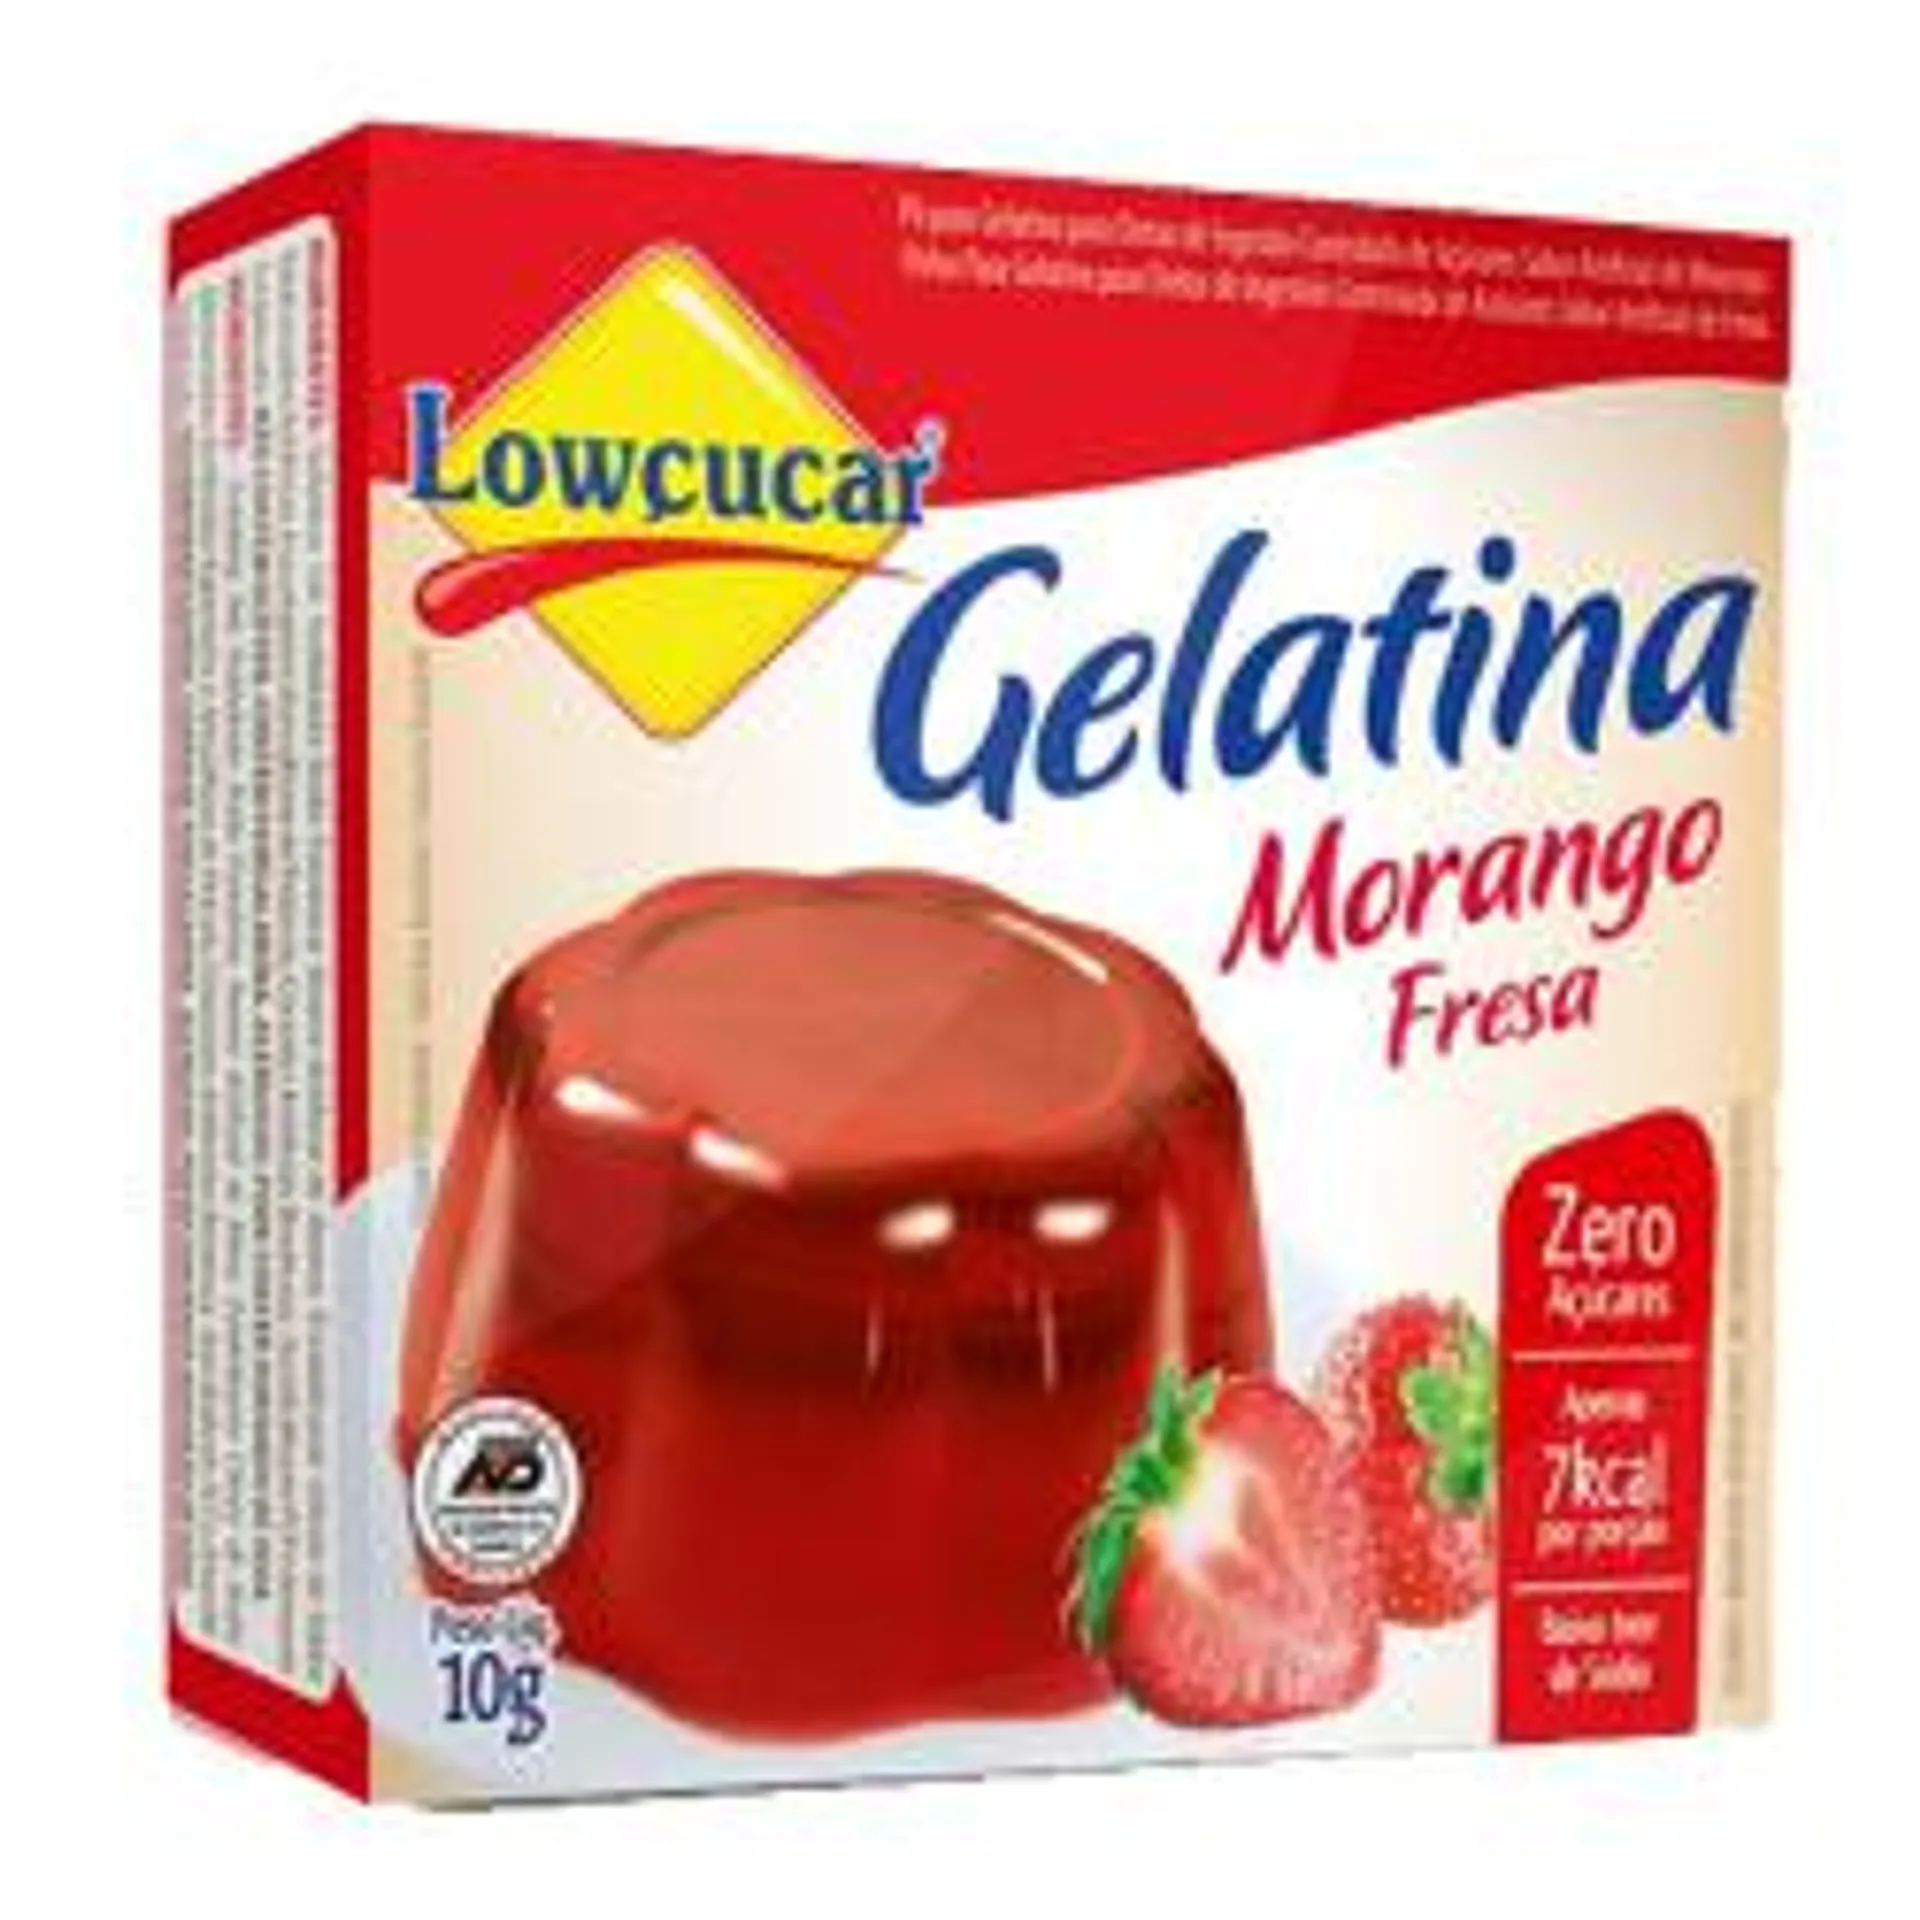 Gelatina Lowcucar Zero Ac.10g Morango